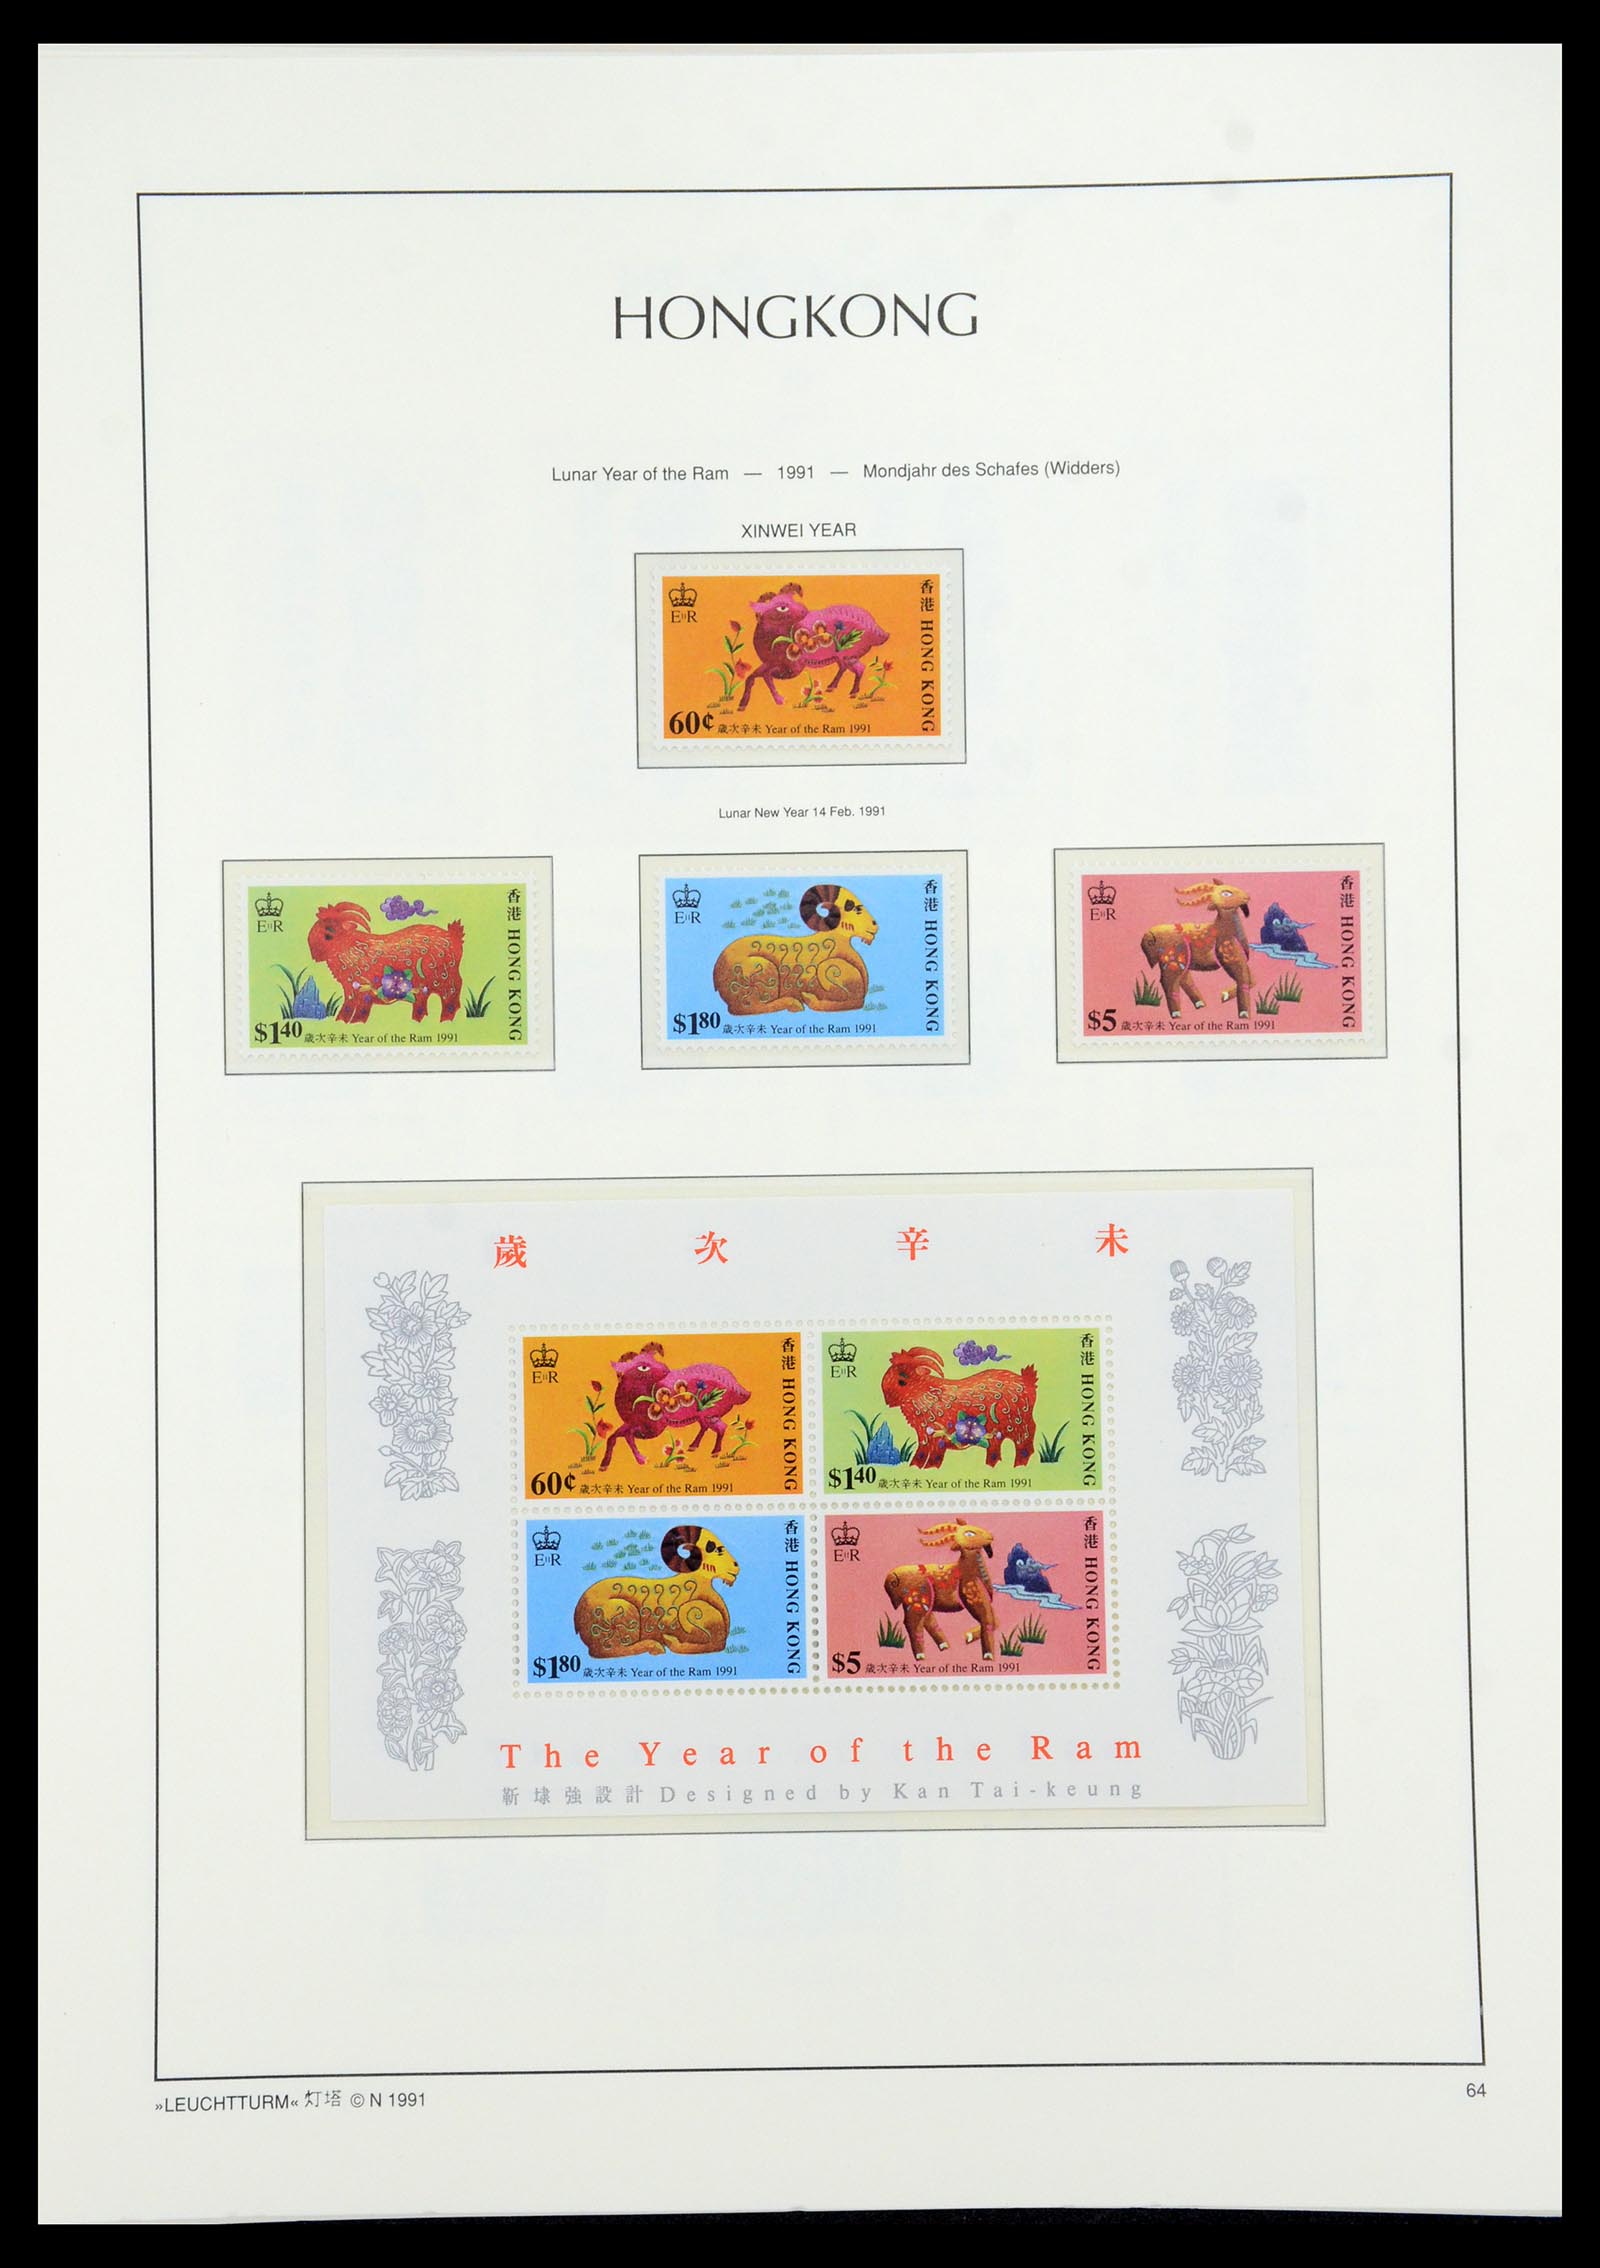 35997 052 - Stamp collection 35997 Hong Kong 1949-1996.